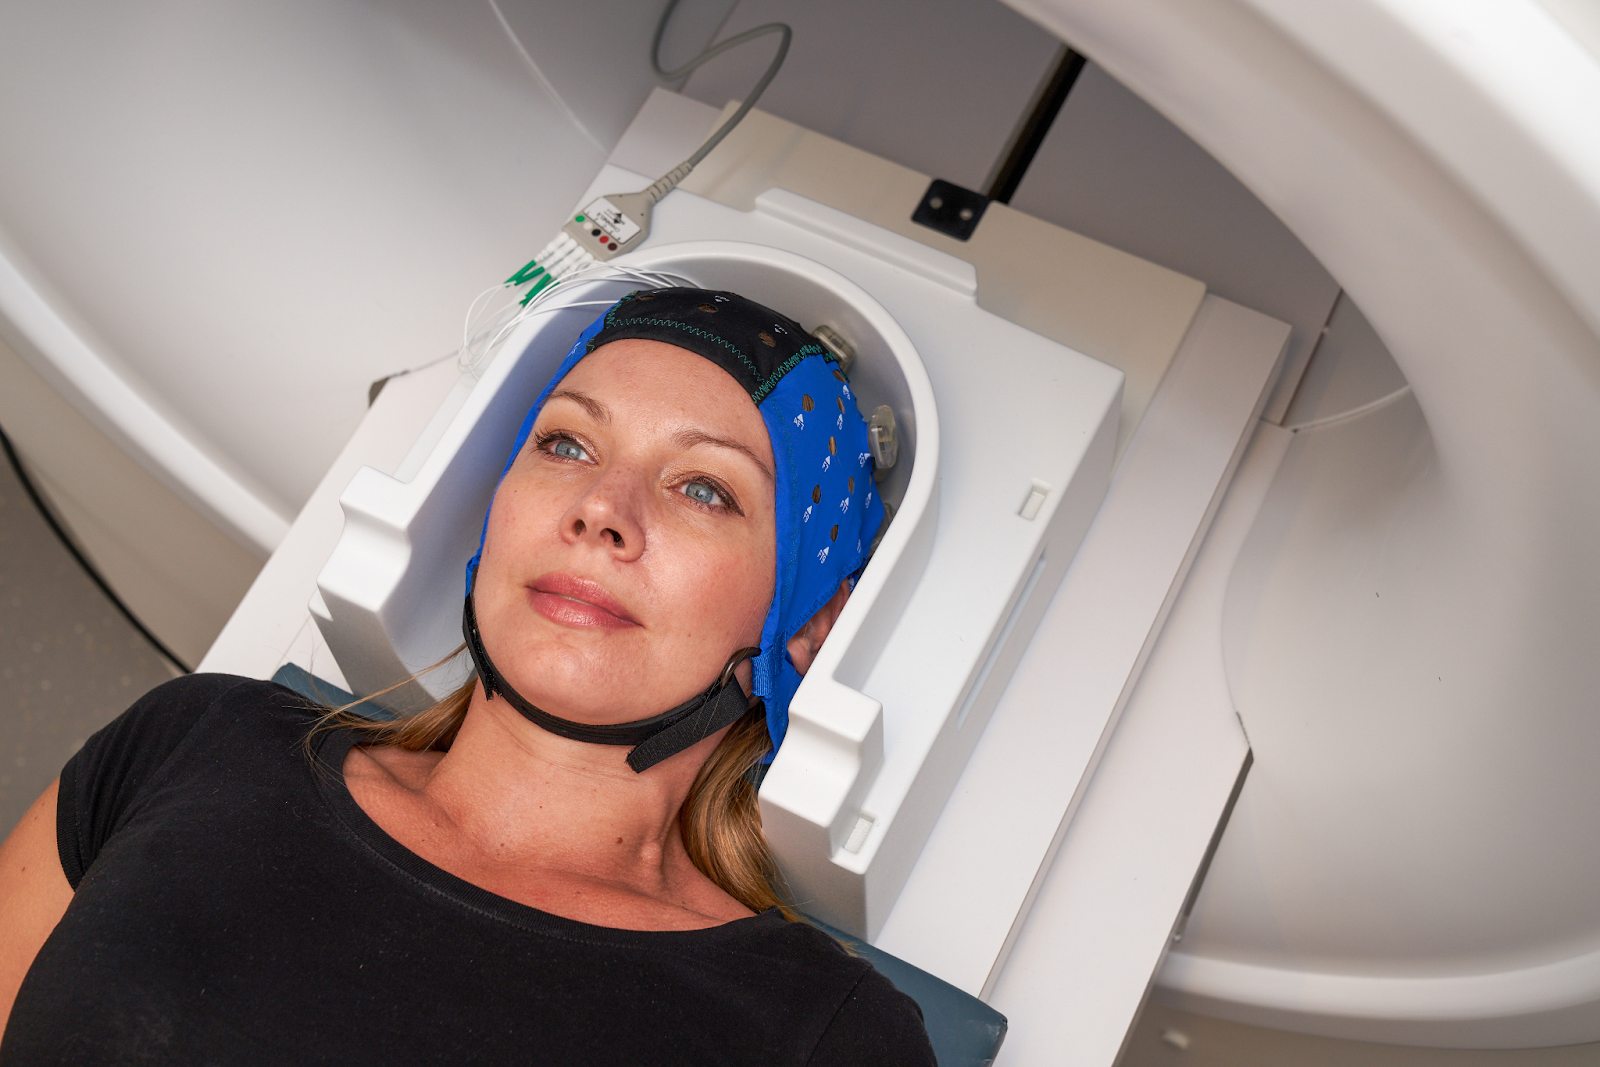 MRI/fMRI setups for tDCS, HD-tDCS and EEG systems